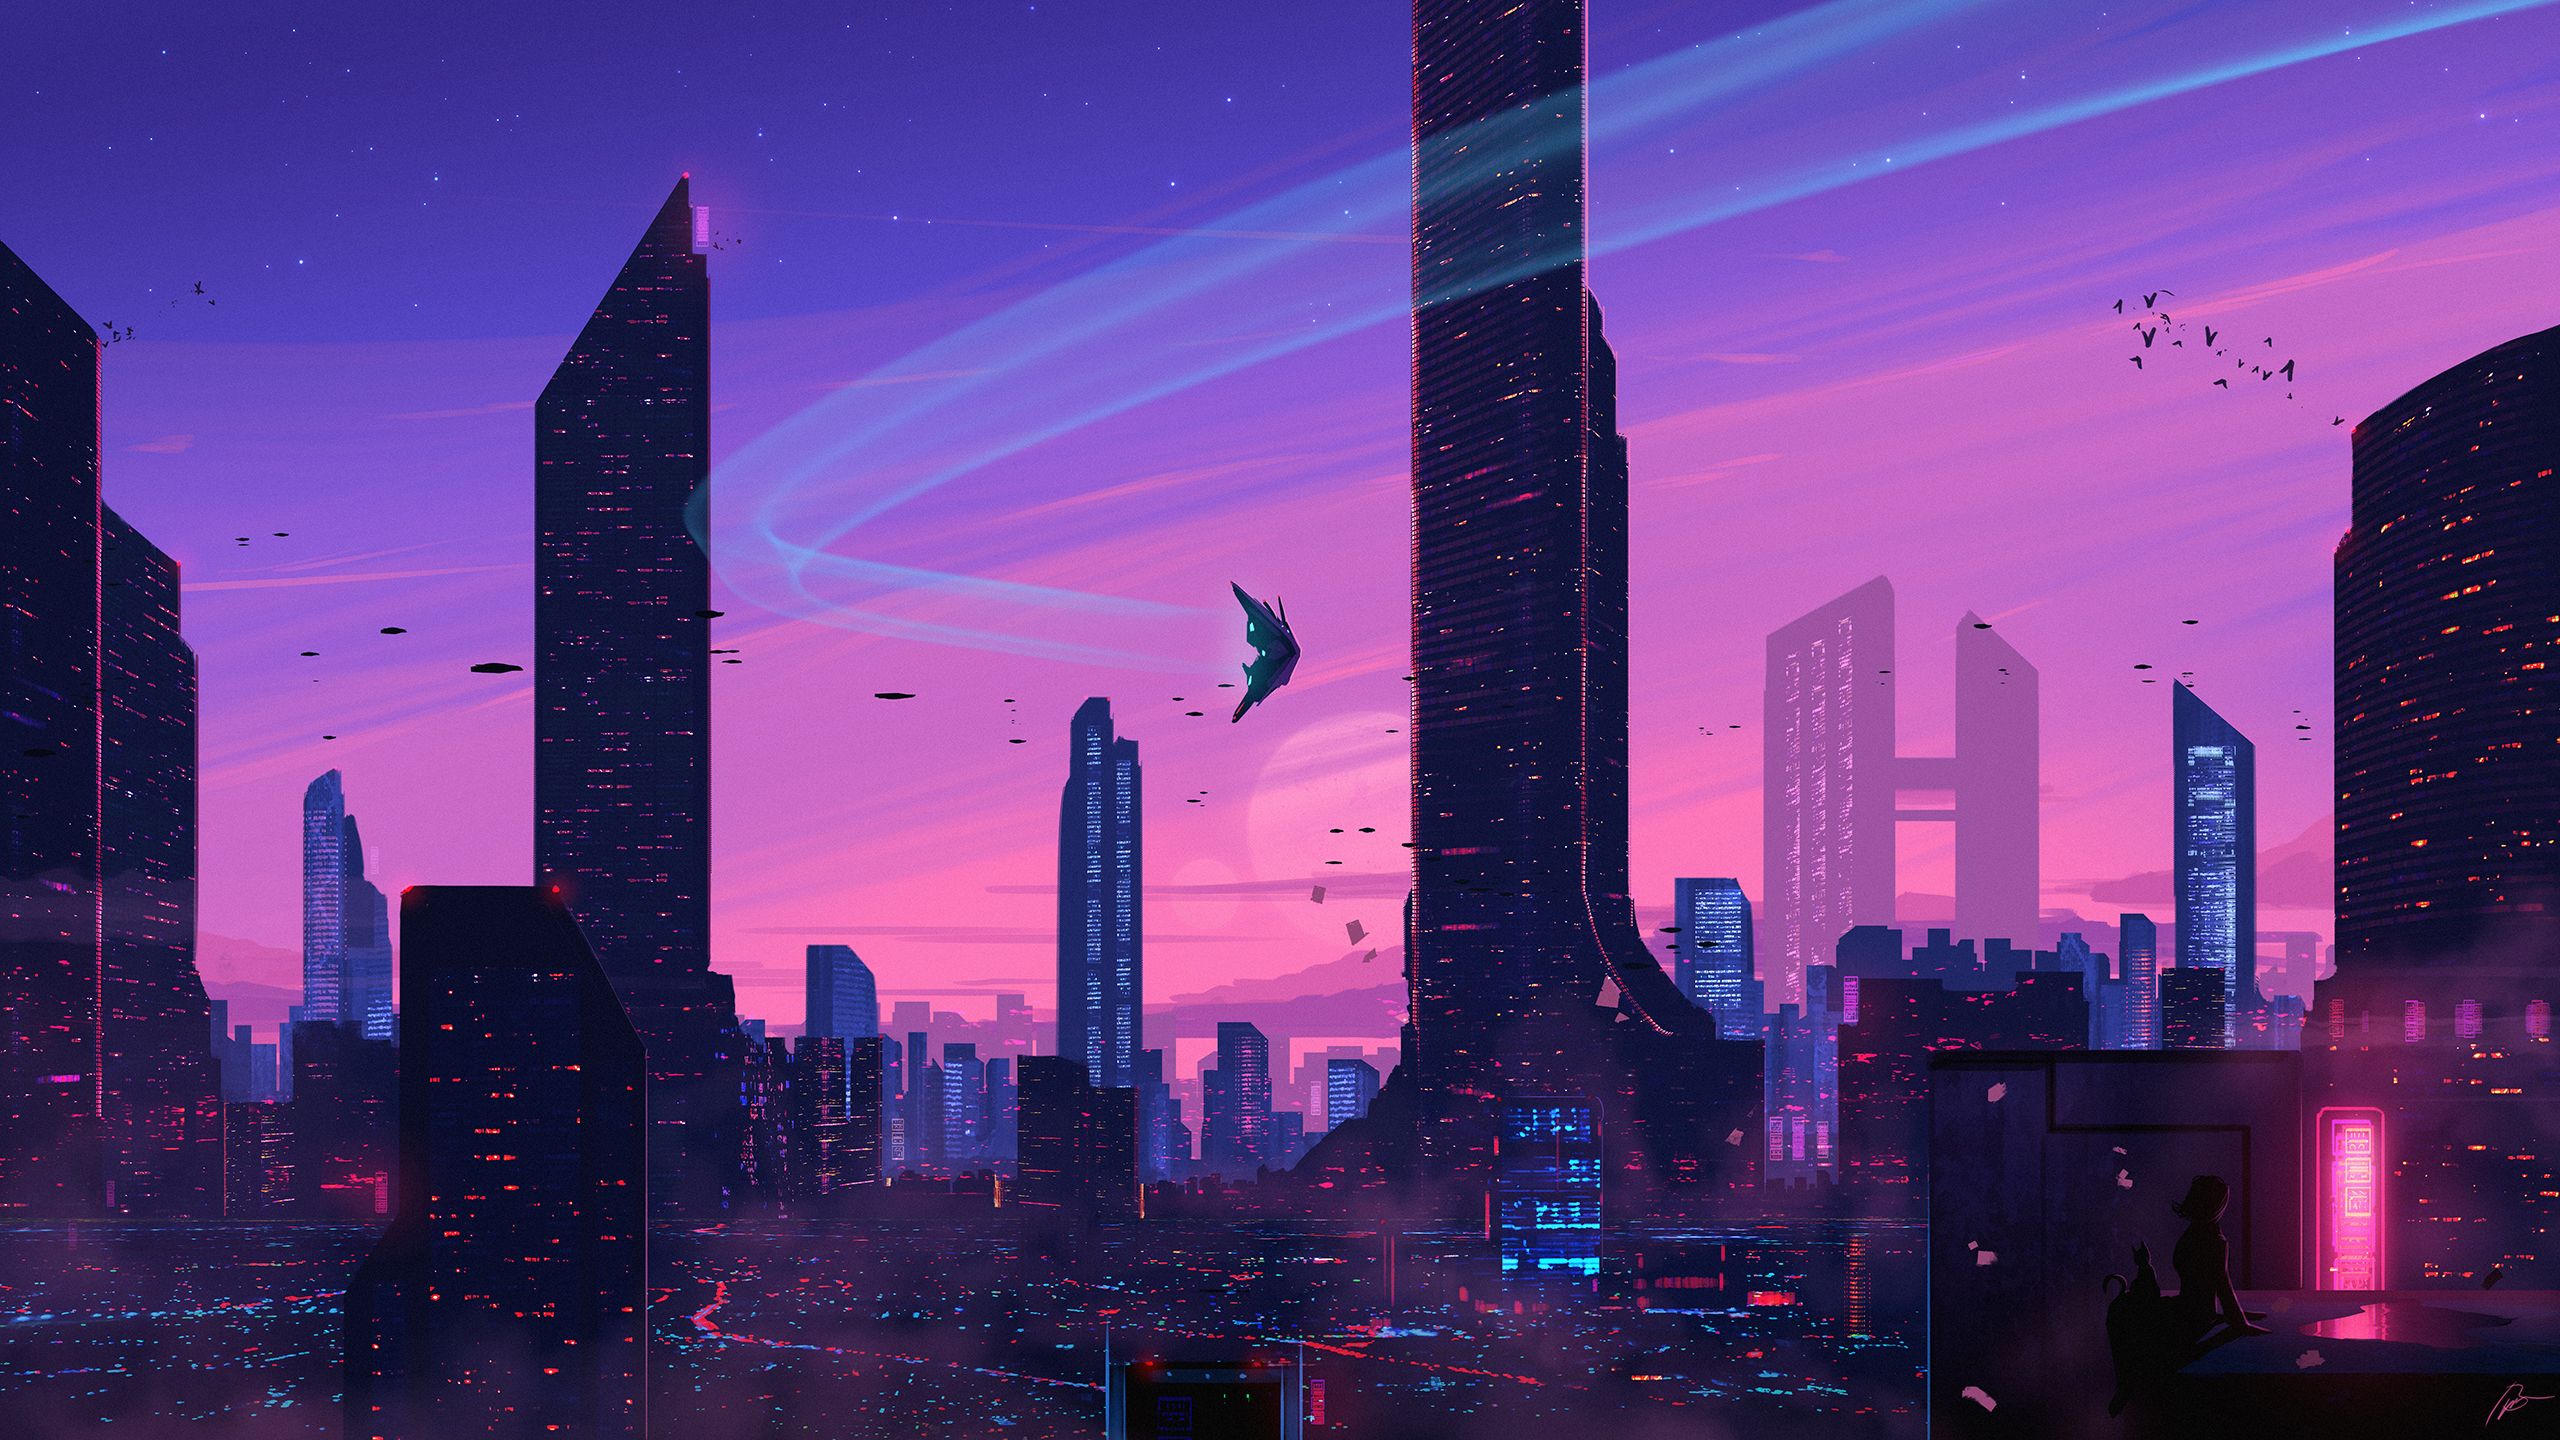 futuristic, sci fi, city, cat, cityscape, skyscraper